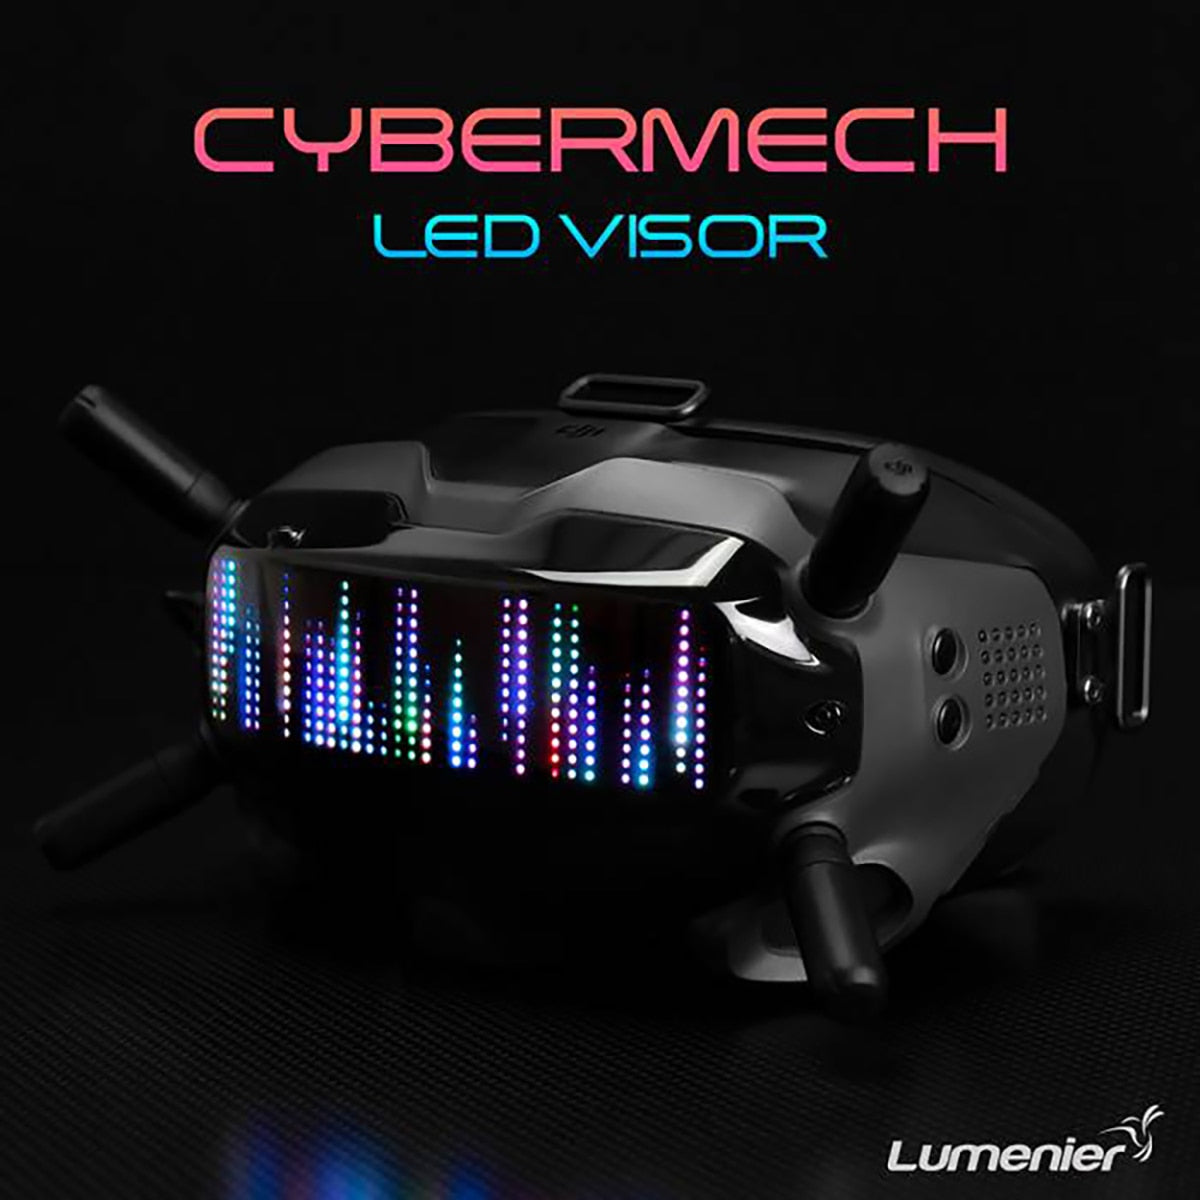 Lumenier CYBERMECH LED Visor RGB High-density Display With 432 LEDs 2-6S For DJI FPV Goggles V1 / V2 LED PANEL